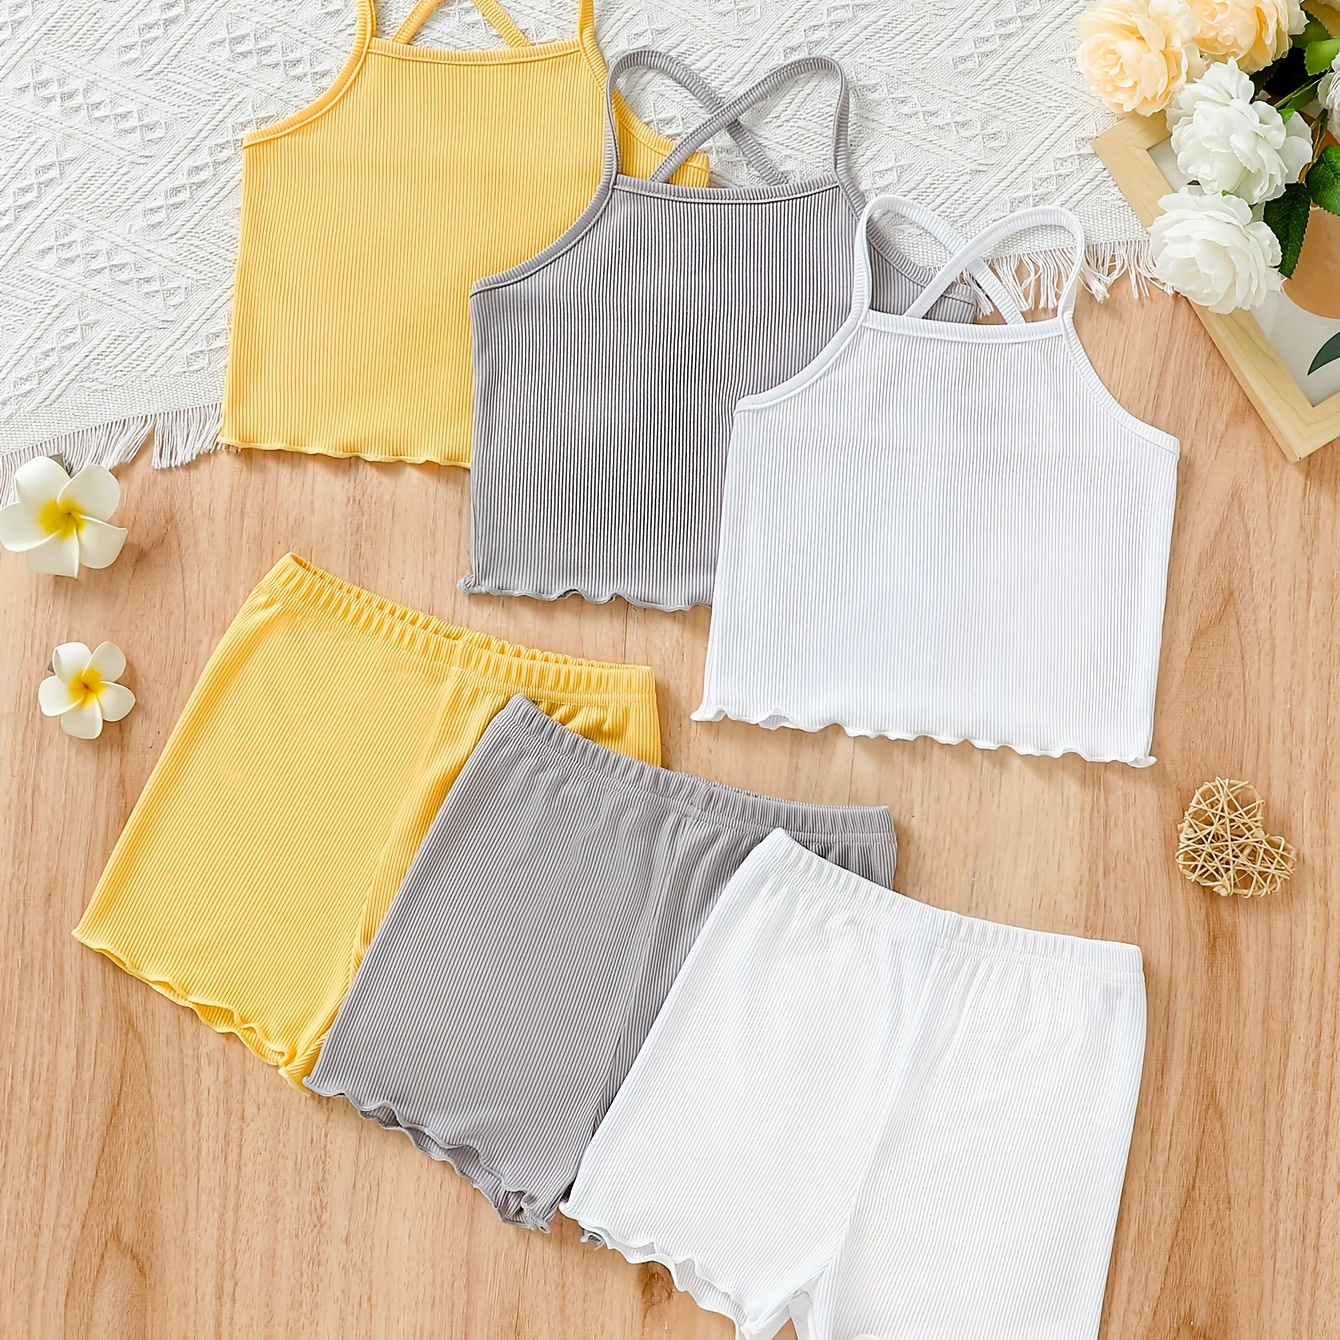 

3pcs Sous-vêtements d'été pour filles, comprenant une culotte en dentelle froncée de couleur unie avec bretelles croisées, un débardeur et un short blanc, jaune et gris de petite taille.